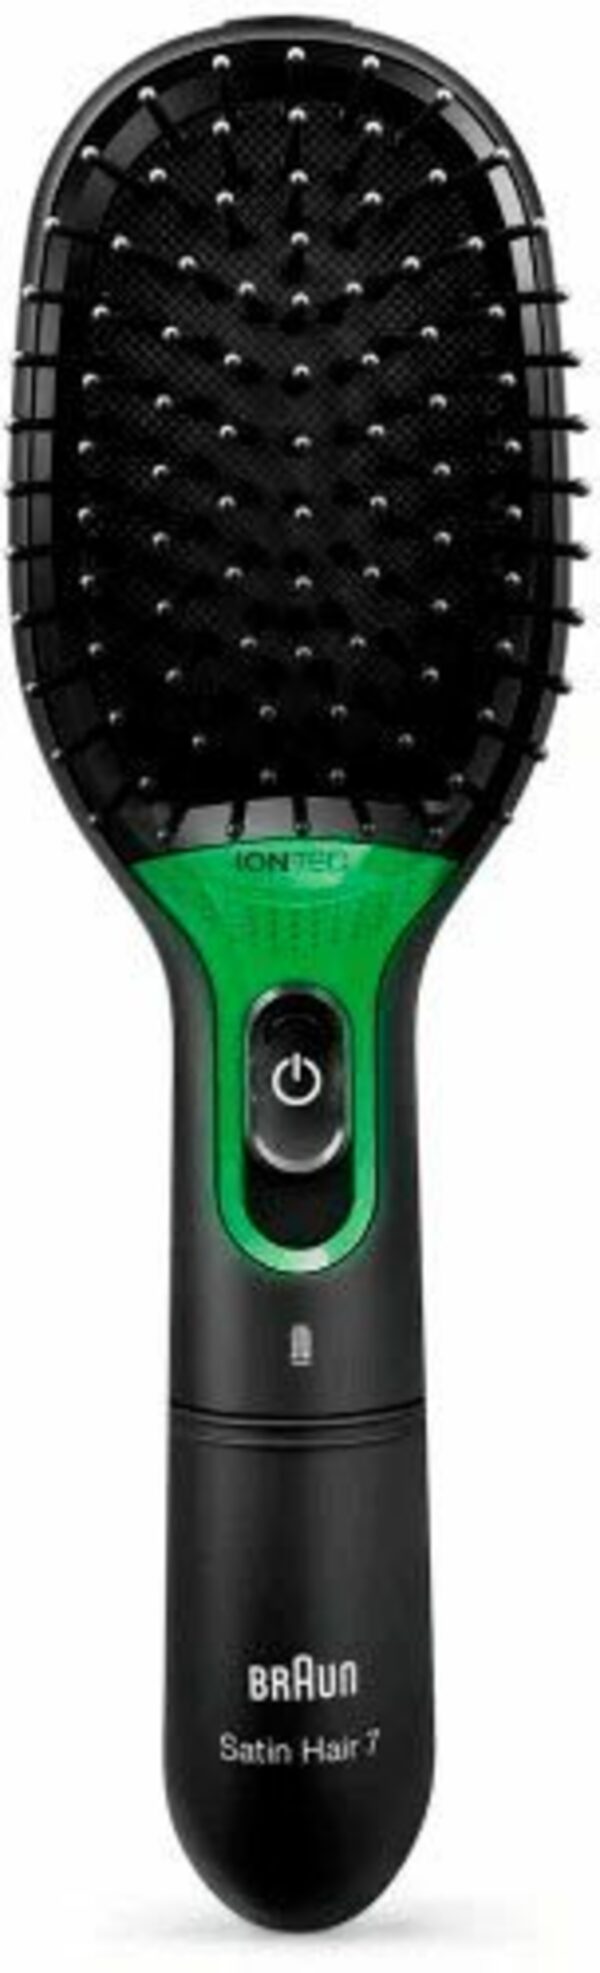 Bild 1 von Braun Elektrohaarbürste Satin Hair 7 Bürste mit IONTEC Technologie